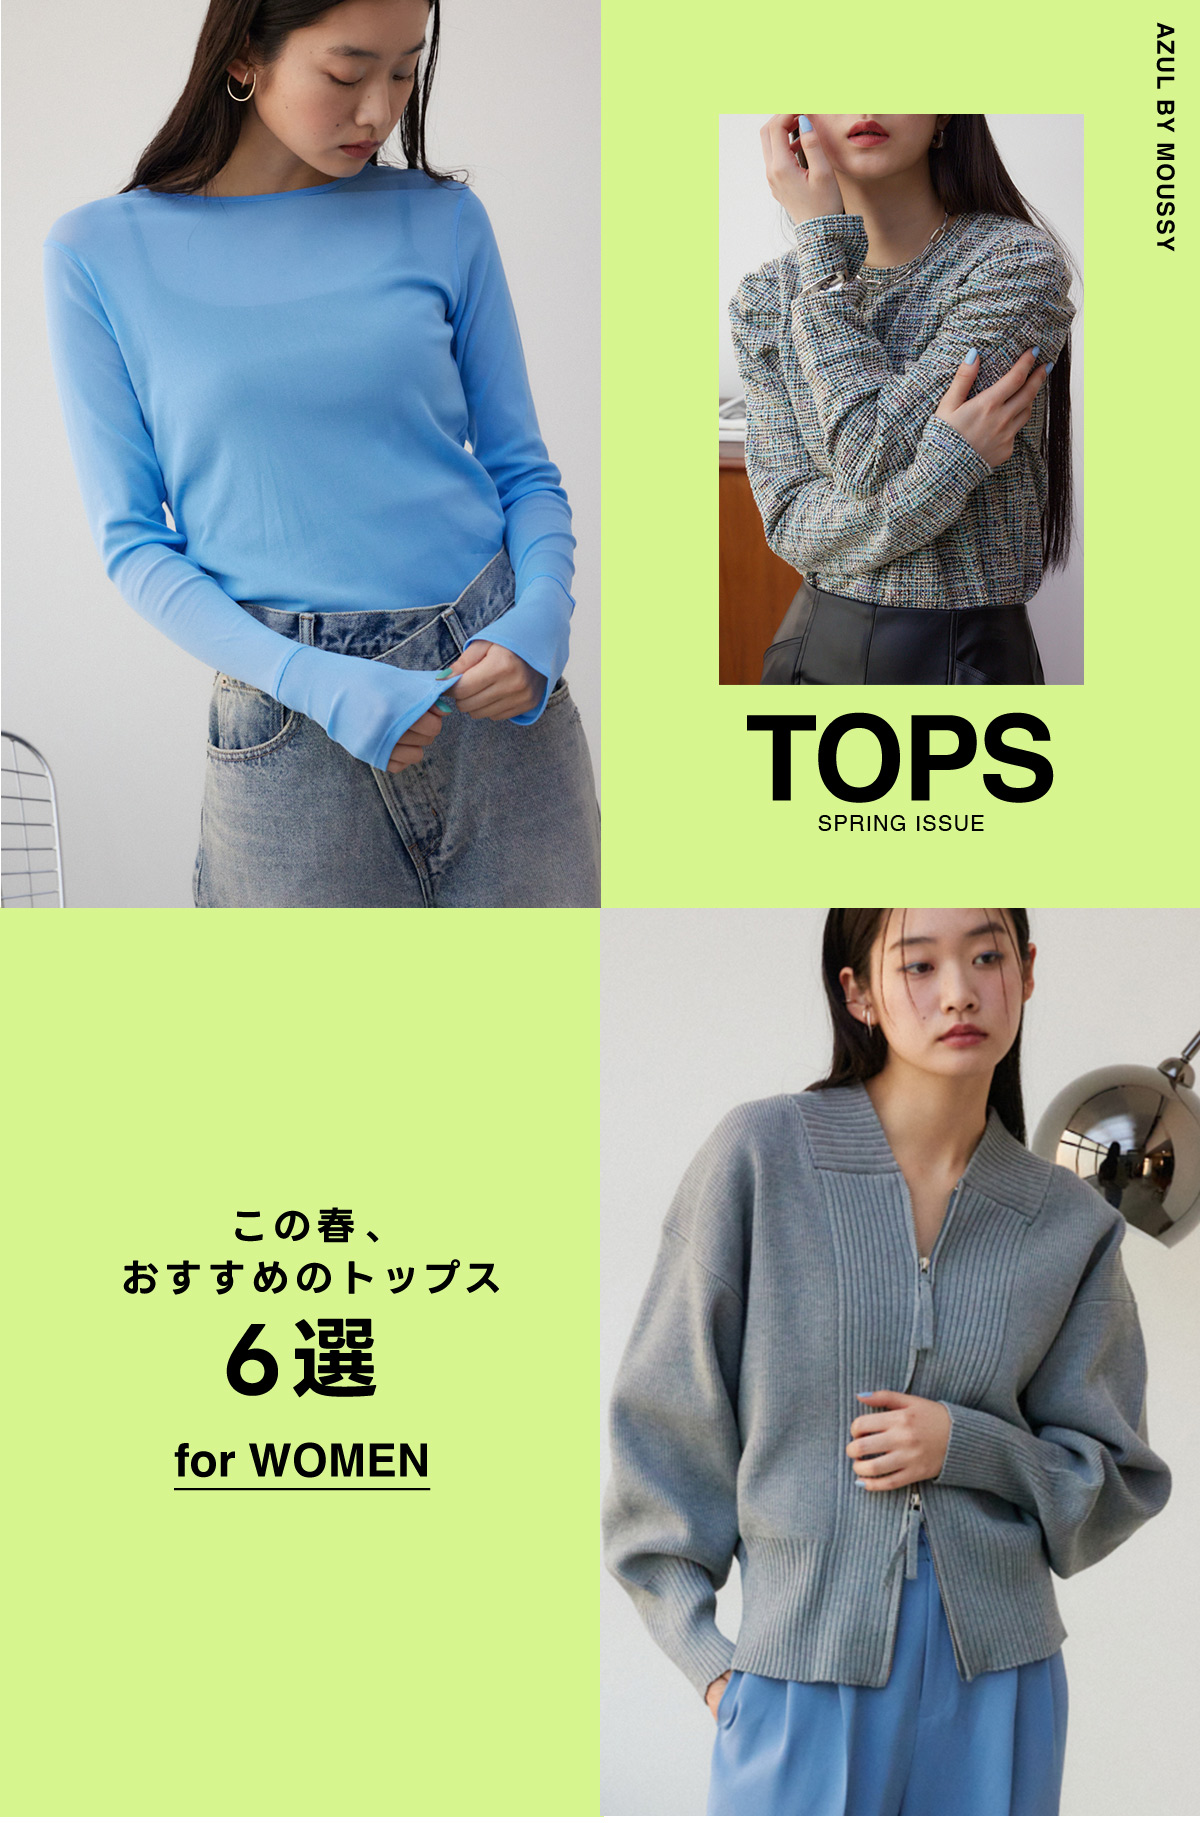 TOPS SPRING ISSUE この春おすすめのトップス6選 for WOMEN